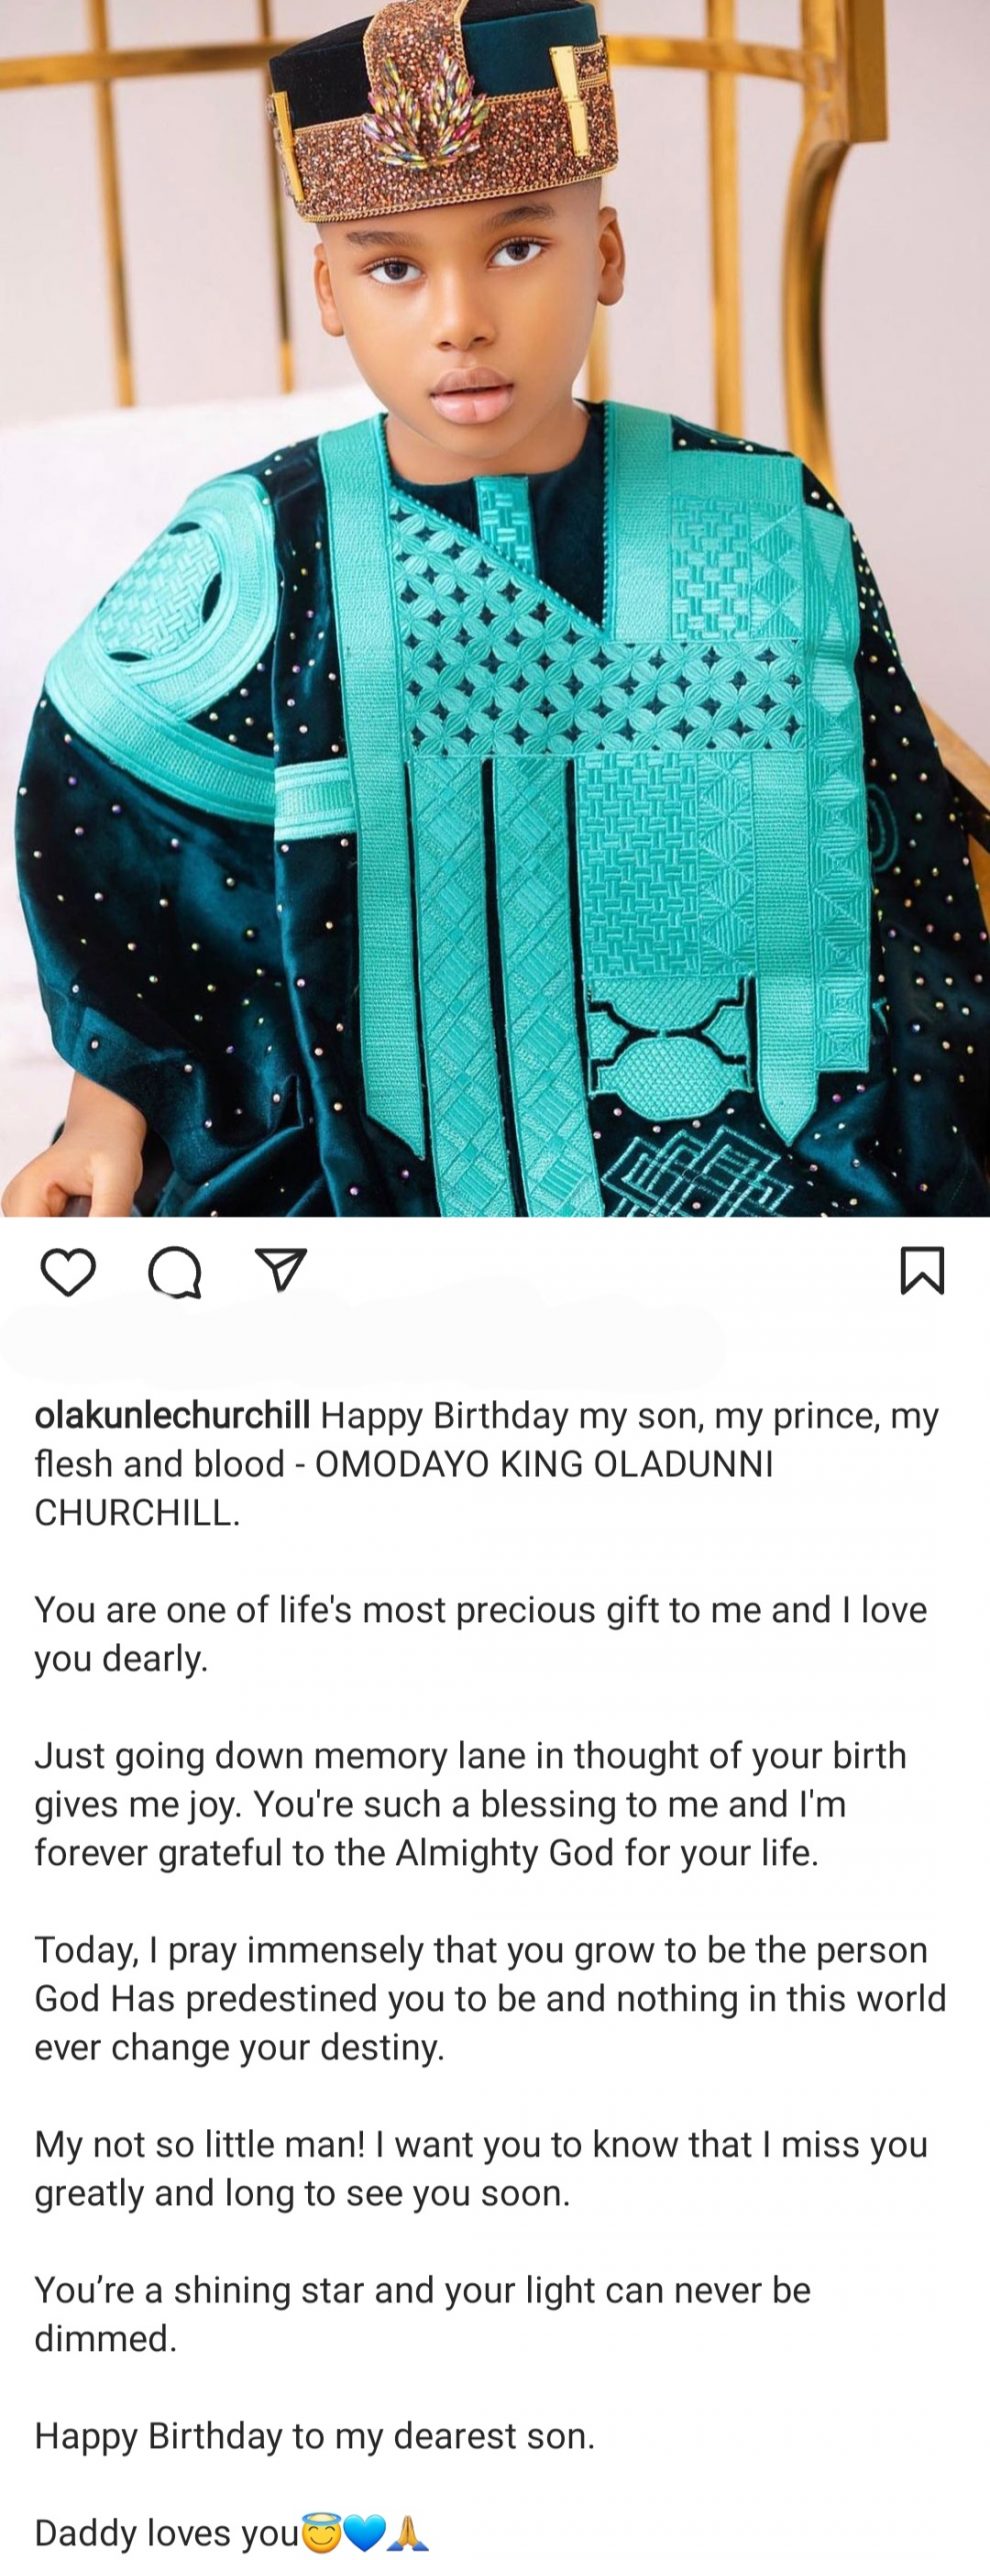 Churchill Olakunle 